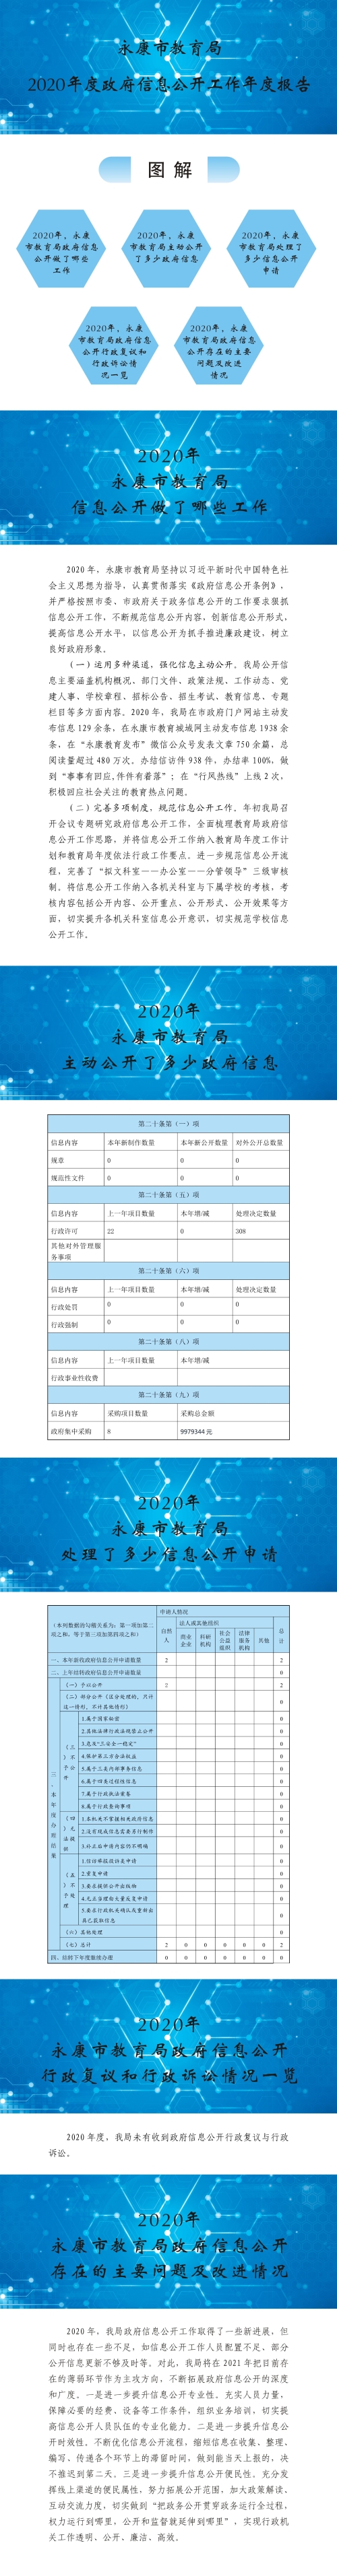 2020永康市教育局政府信息公开工作报告图解.jpg